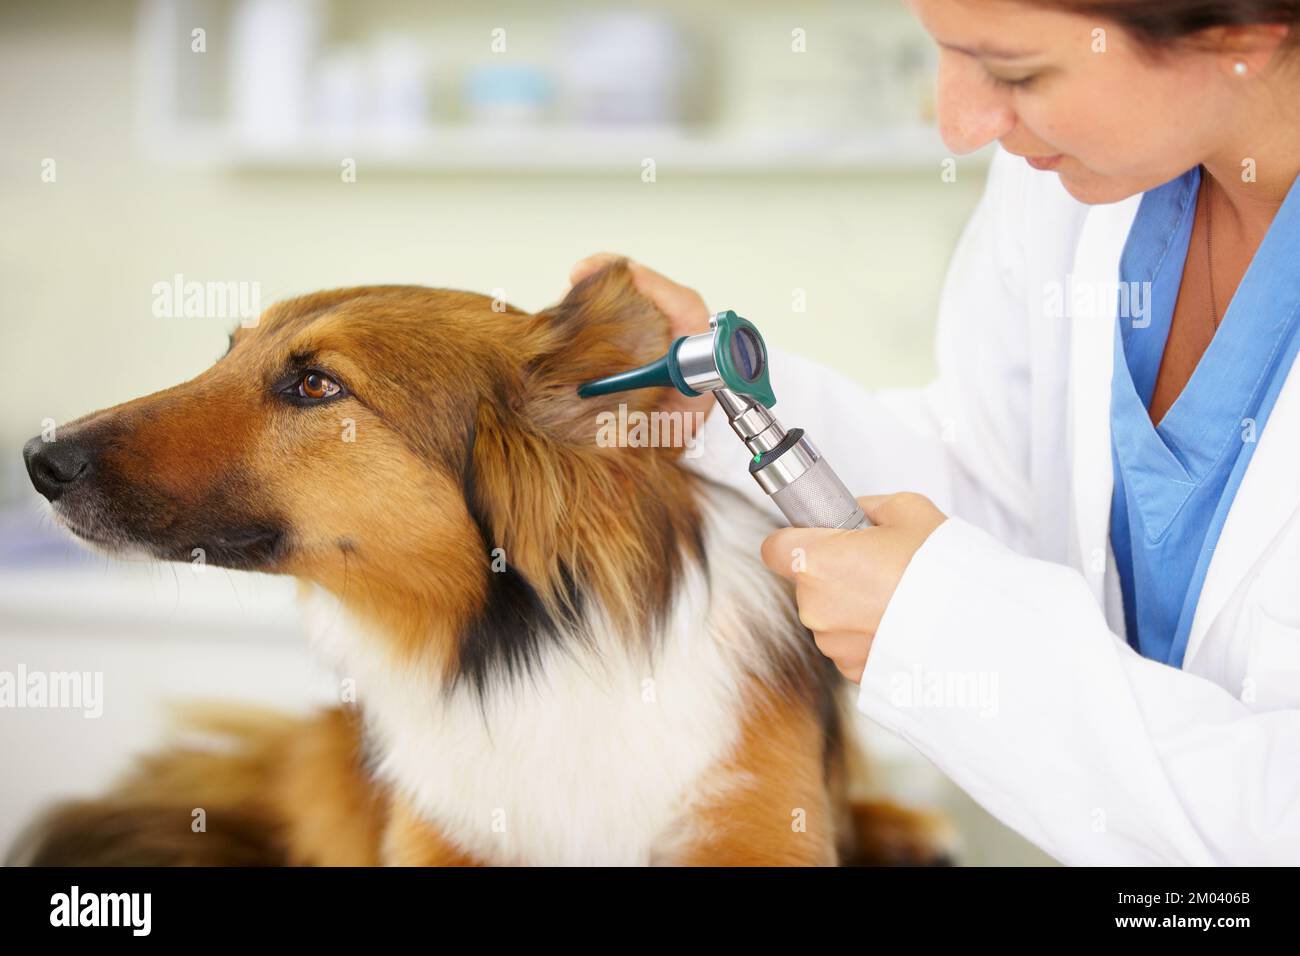 Ich muss mich untersuchen lassen. Ein Tierarzt untersucht ein Hundeohr. Stockfoto